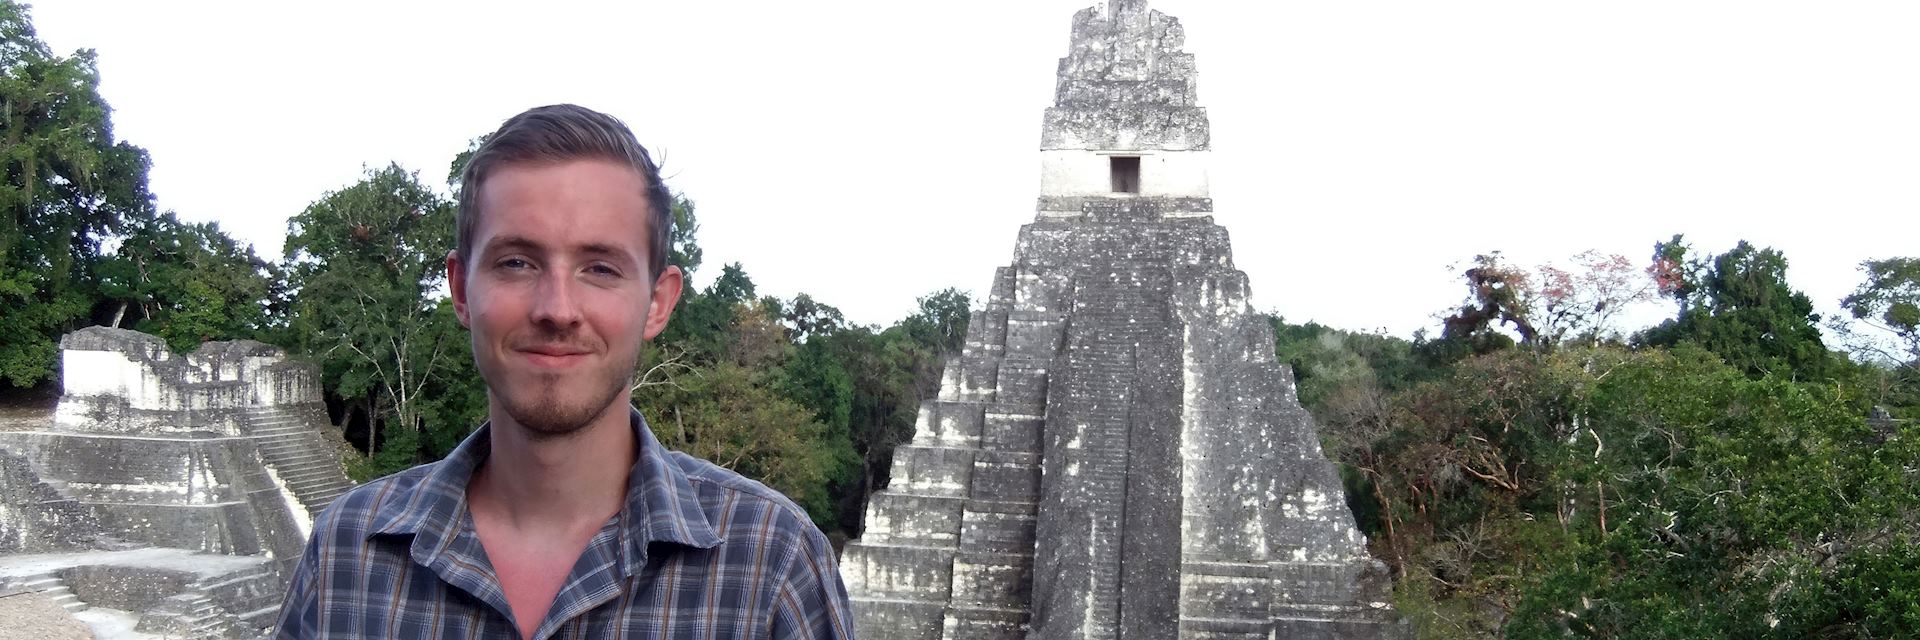 Tom visiting the temples at Tikal, Guatemala